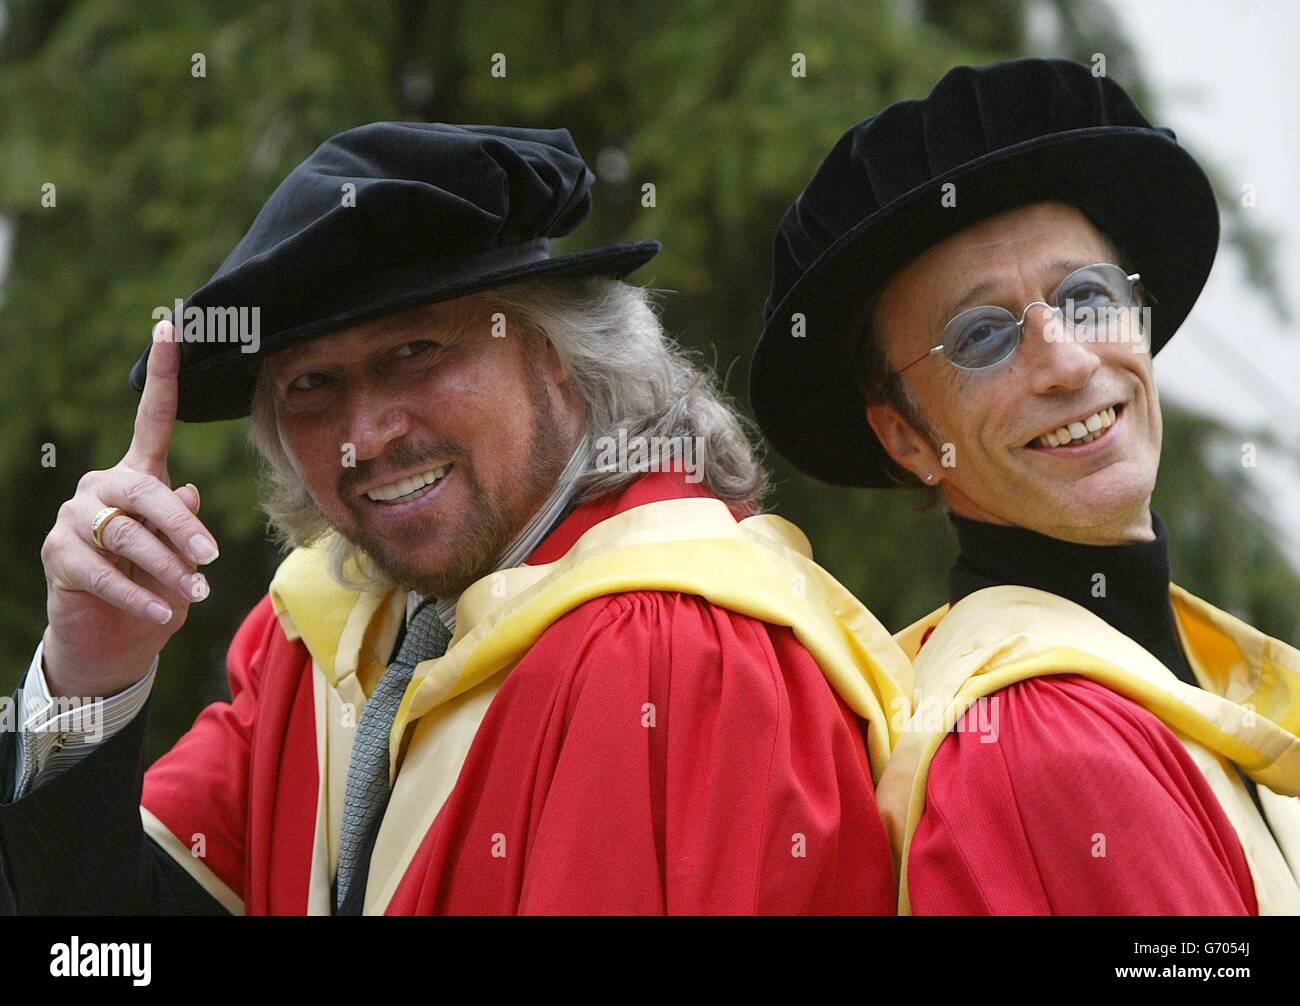 Die Bee Gees, Barry (links) und Robin Gibb posieren für Fotografen, nachdem sie den Ehrendoktortitel (Doktor der Musik) an der Universität von Manchester erhalten haben. Die Brüder nahmen auch einen posthumen Ehrendoktortitel im Namen ihres verstorbenen Bruders Maurice an, der im Januar 2003 starb. Stockfoto